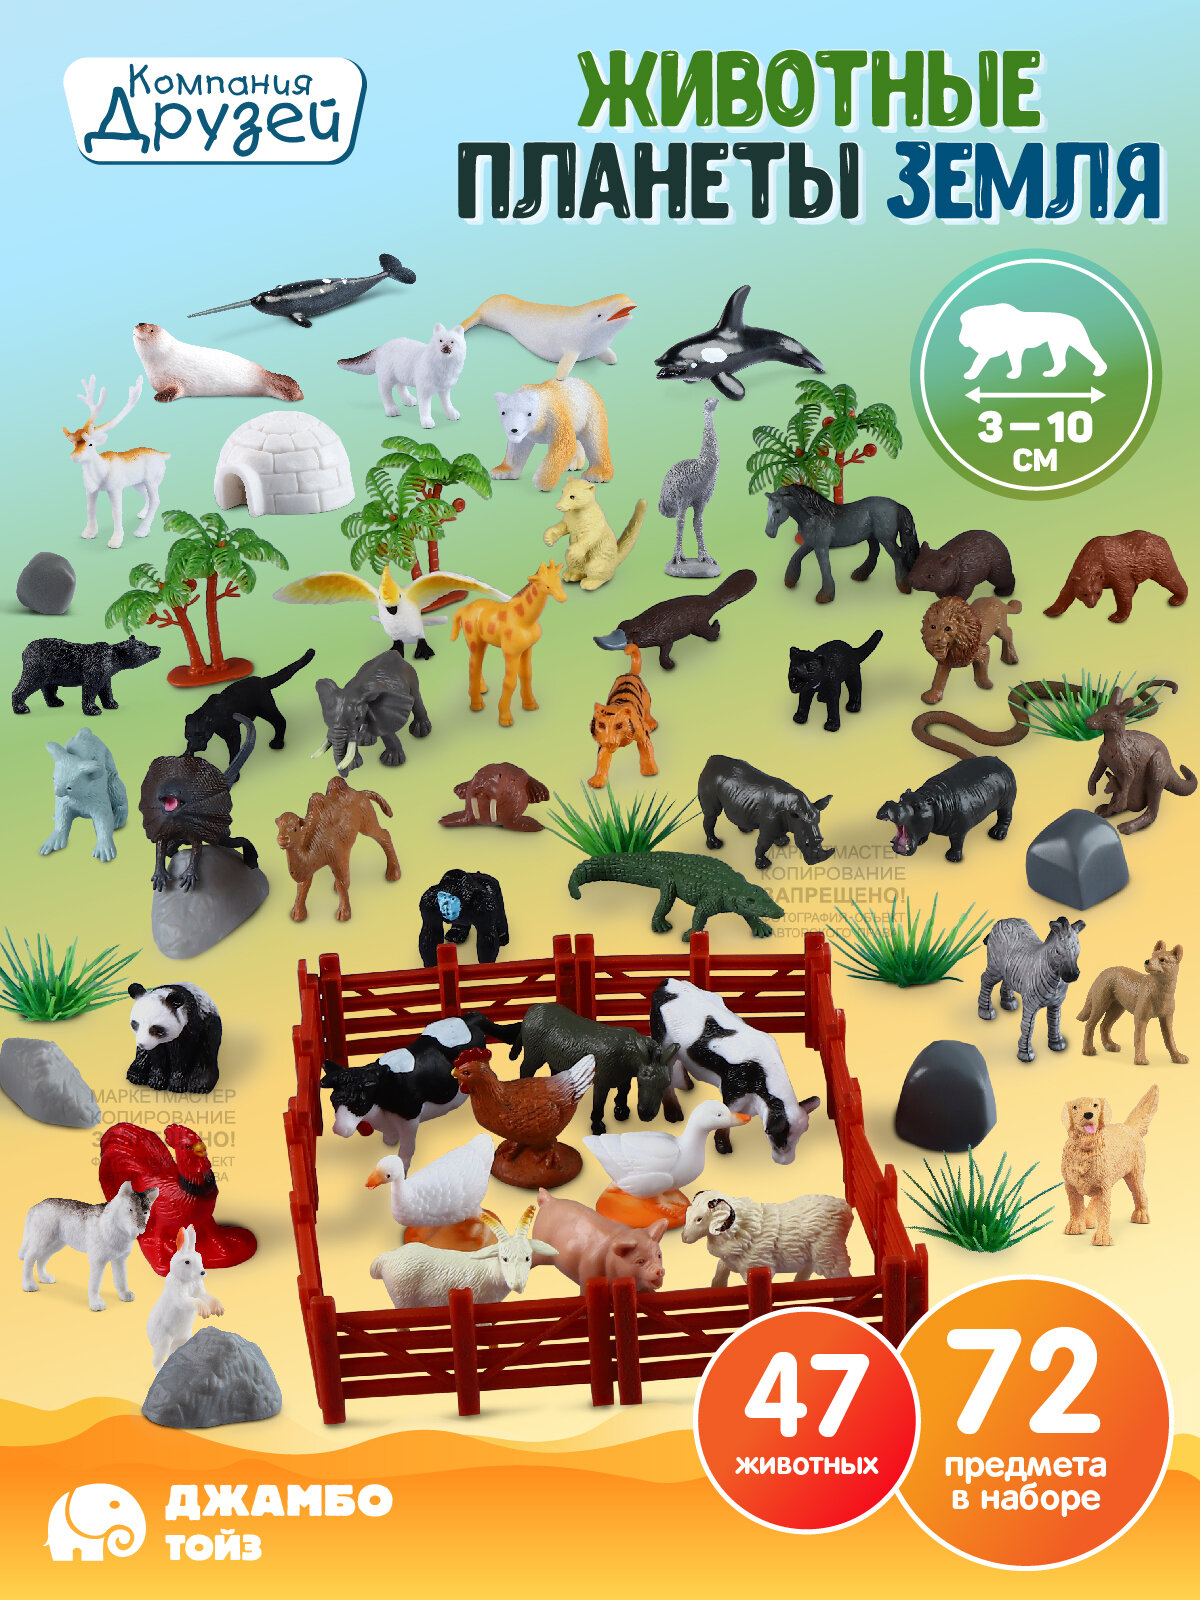 Большой игровой набор "Животные нашей Земли" ТМ Компания Друзей, 72 предмета, JB0211737